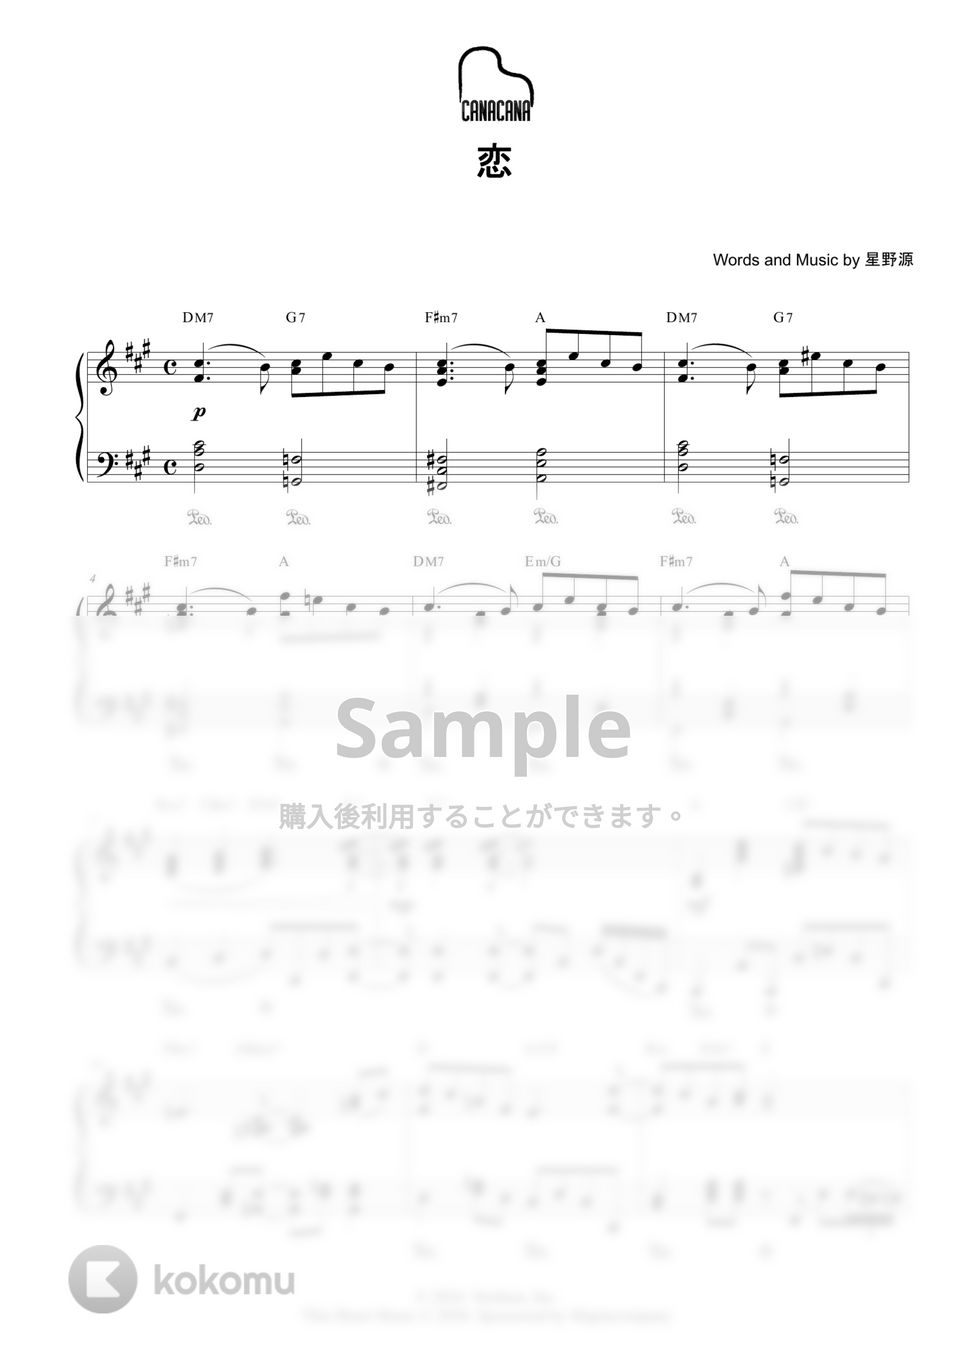 星野源 - 恋 by CANACANA family